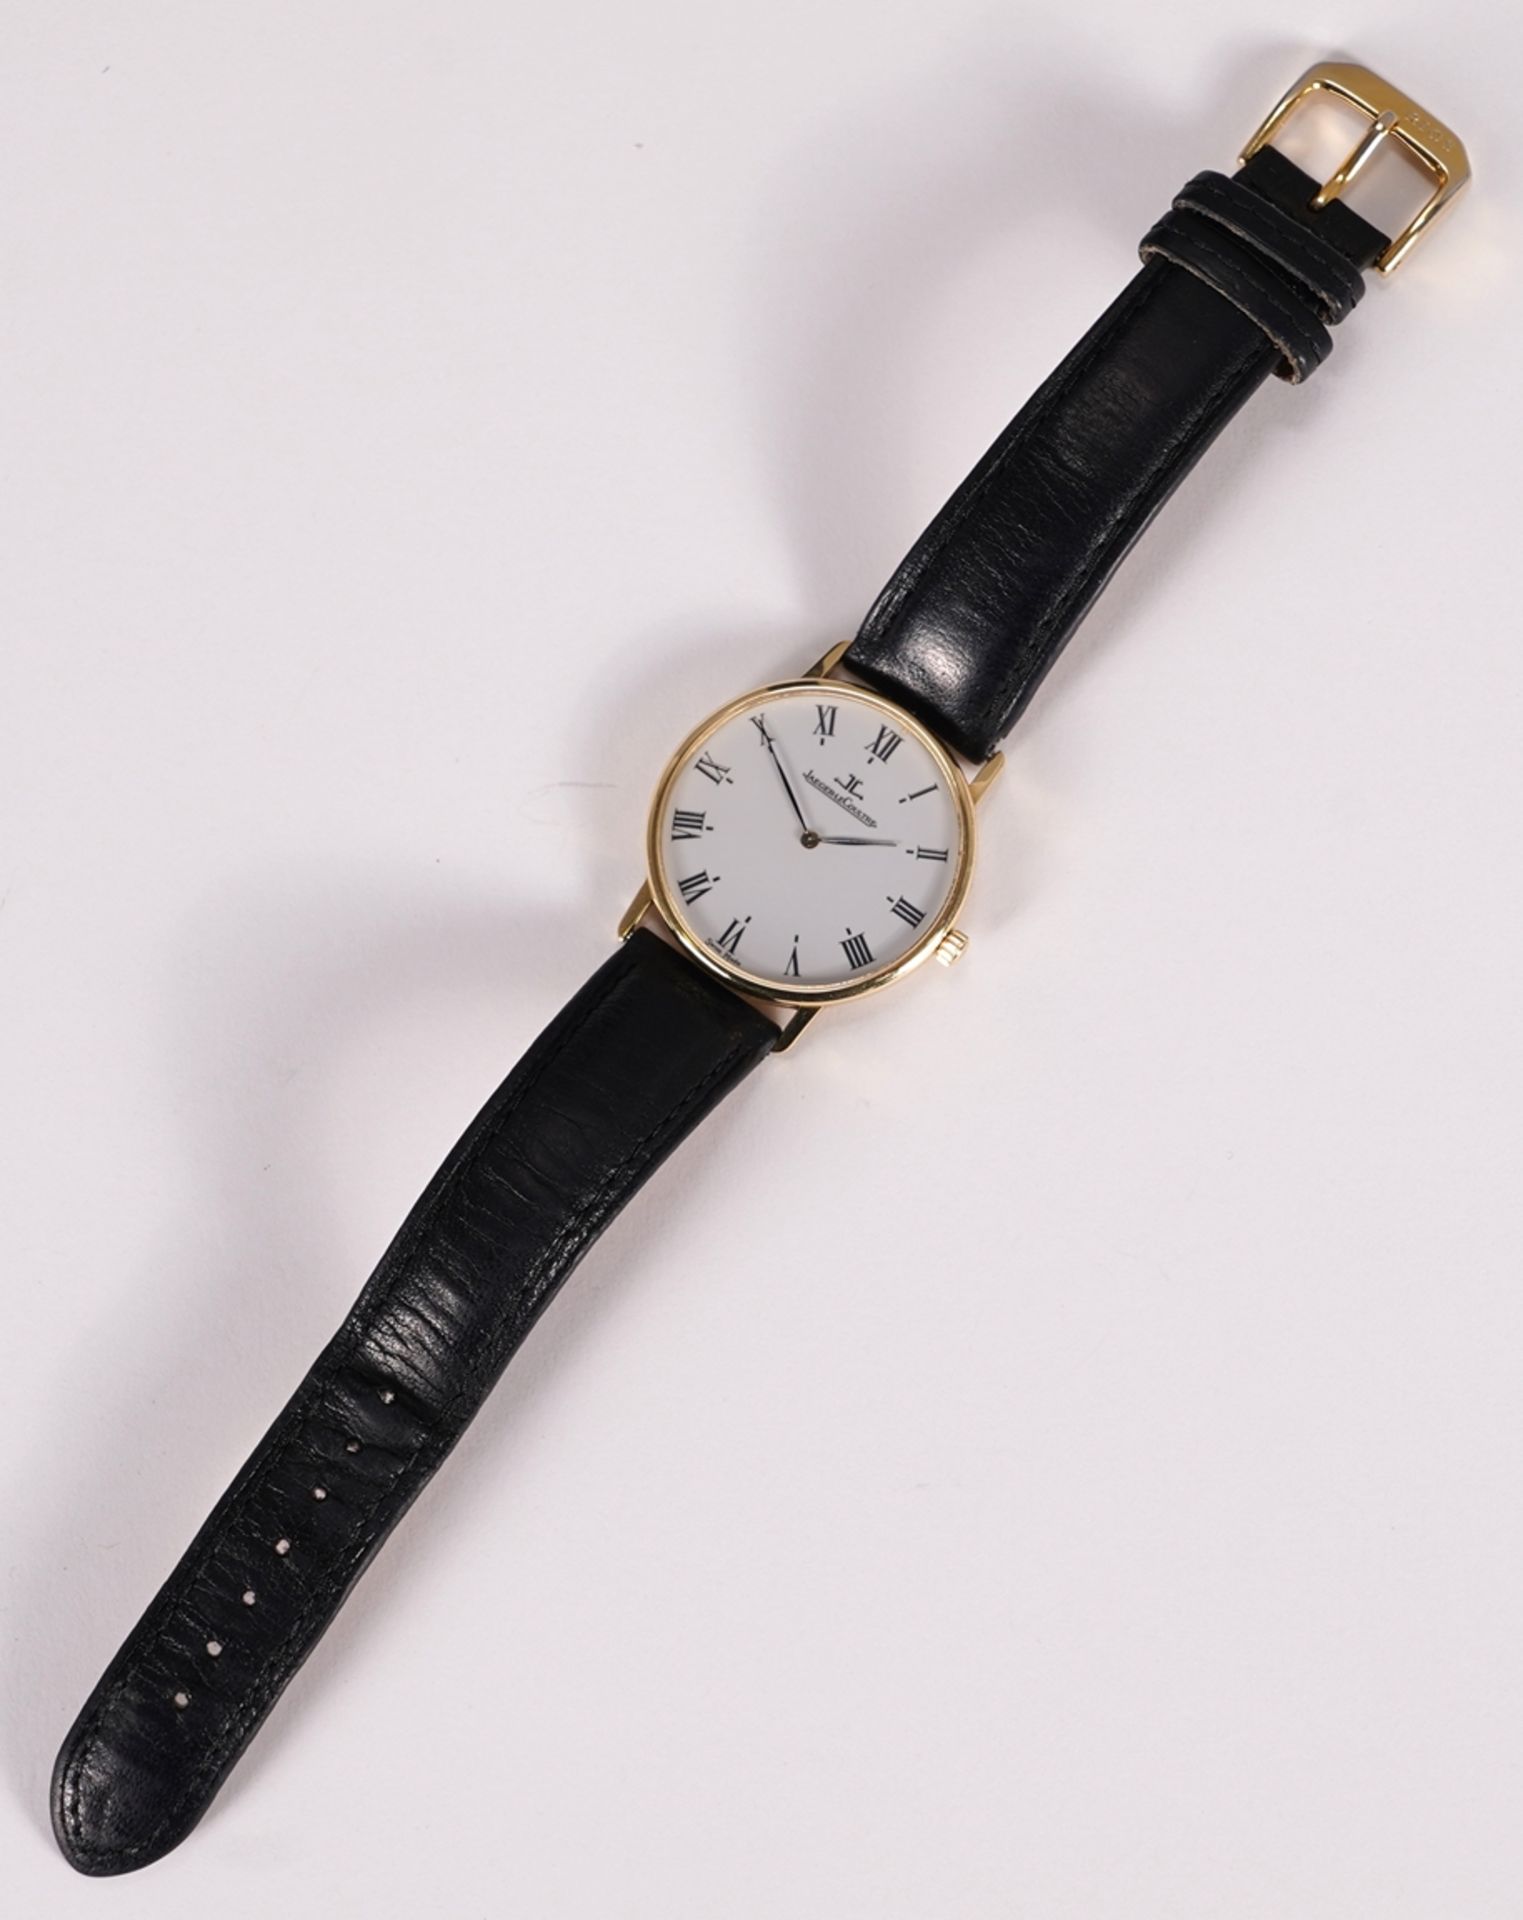 Jaeger Lecoultre Classic Armbanduhr - Bild 3 aus 6